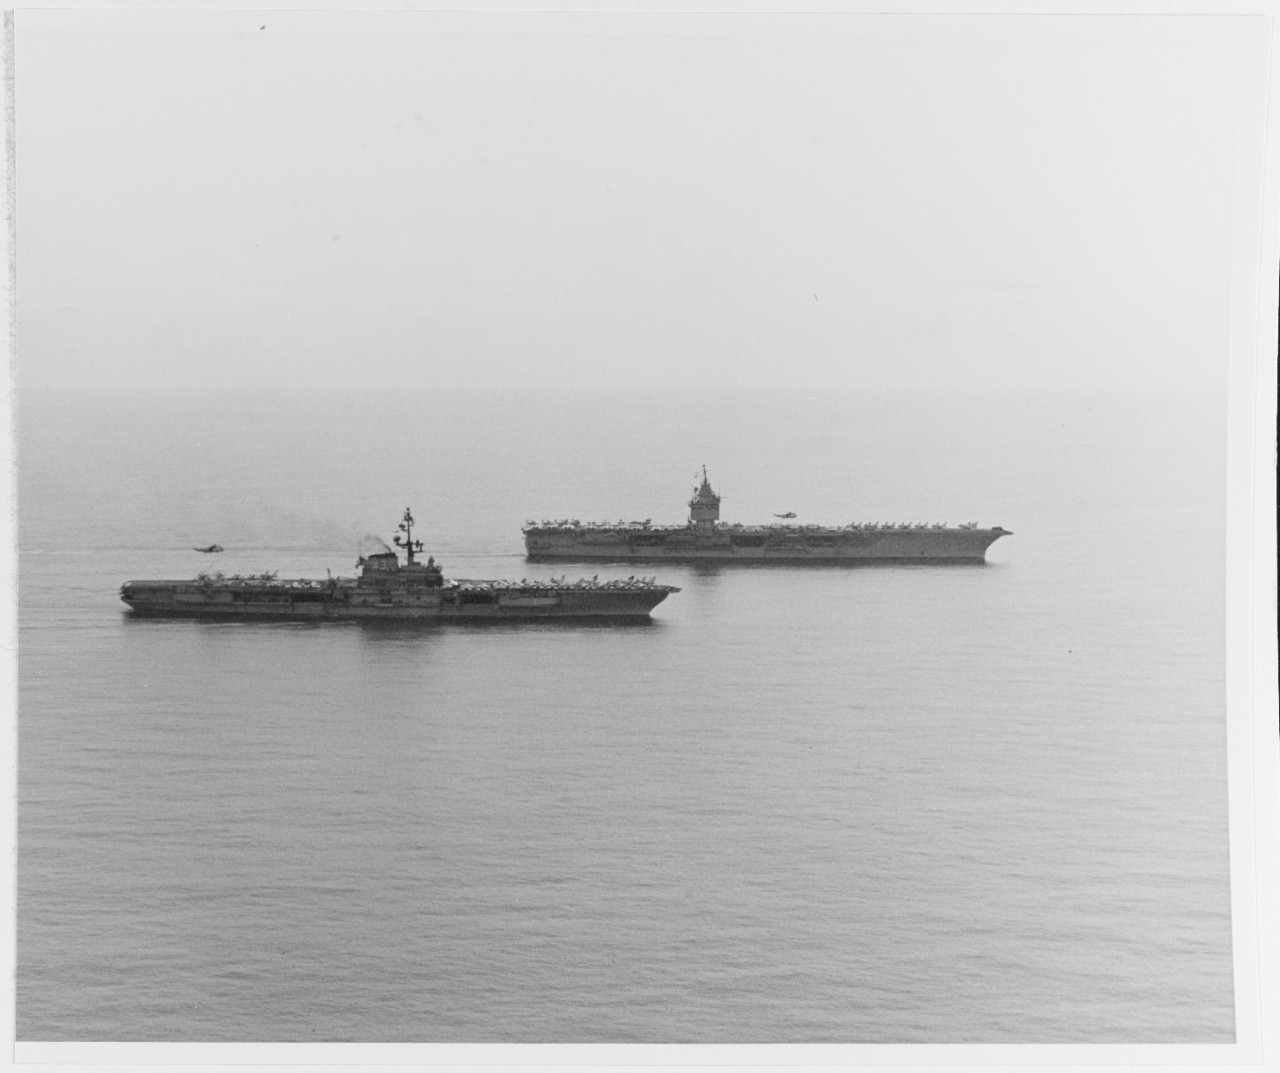 USS CORAL SEA (CVA-43) and USS ENTERPRISE (CVAN-65)